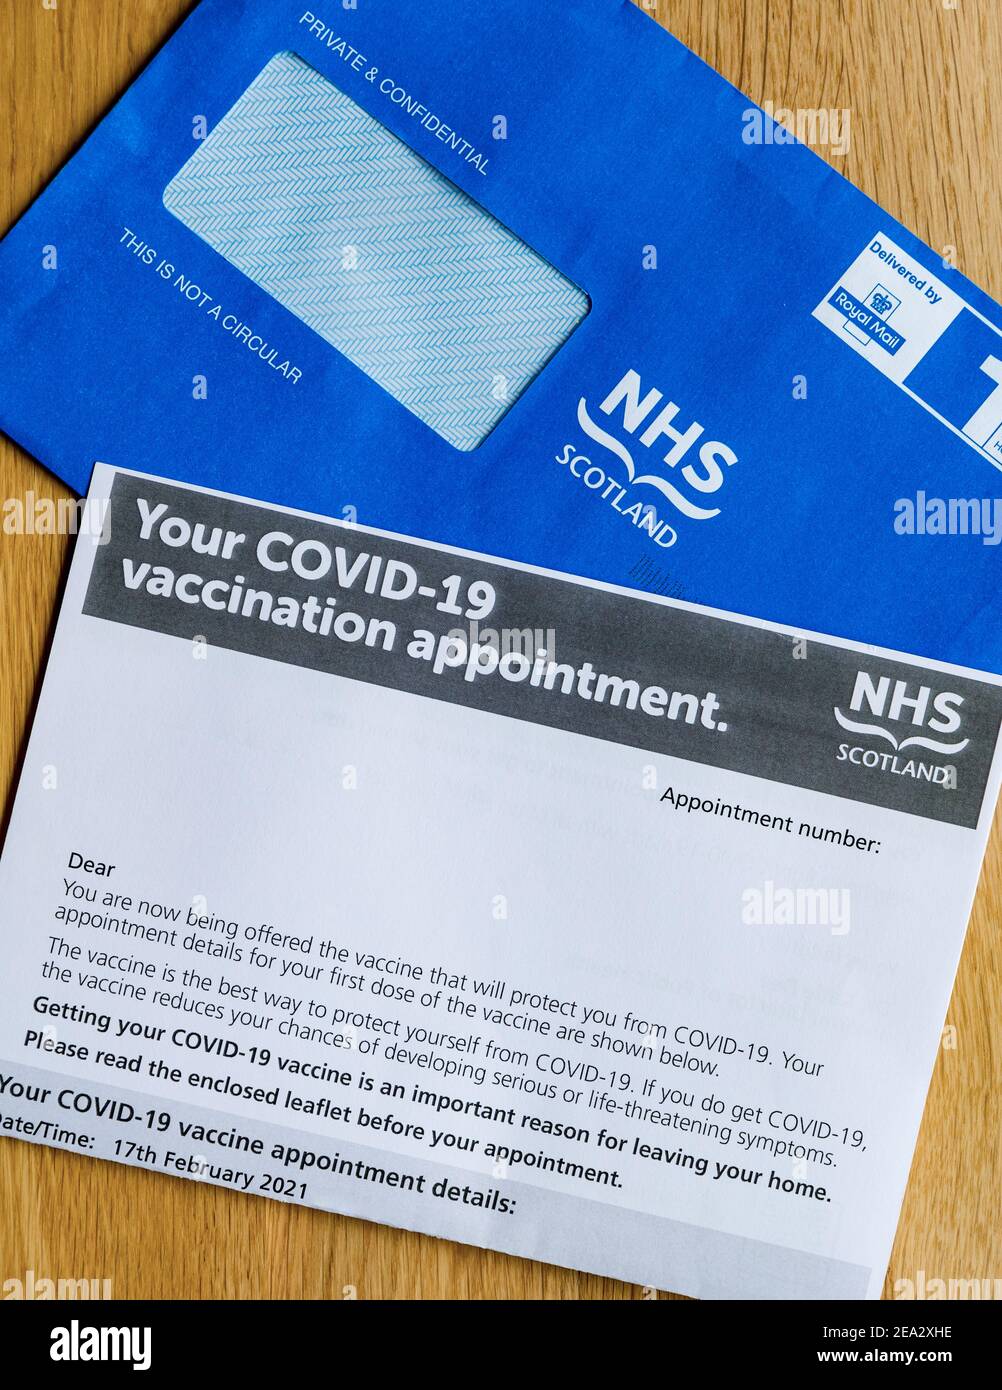 Busta blu della Scozia del NHS e lettera di nomina del vaccino durante la pandemia del coronavirus del Covid-19, Regno Unito Foto Stock